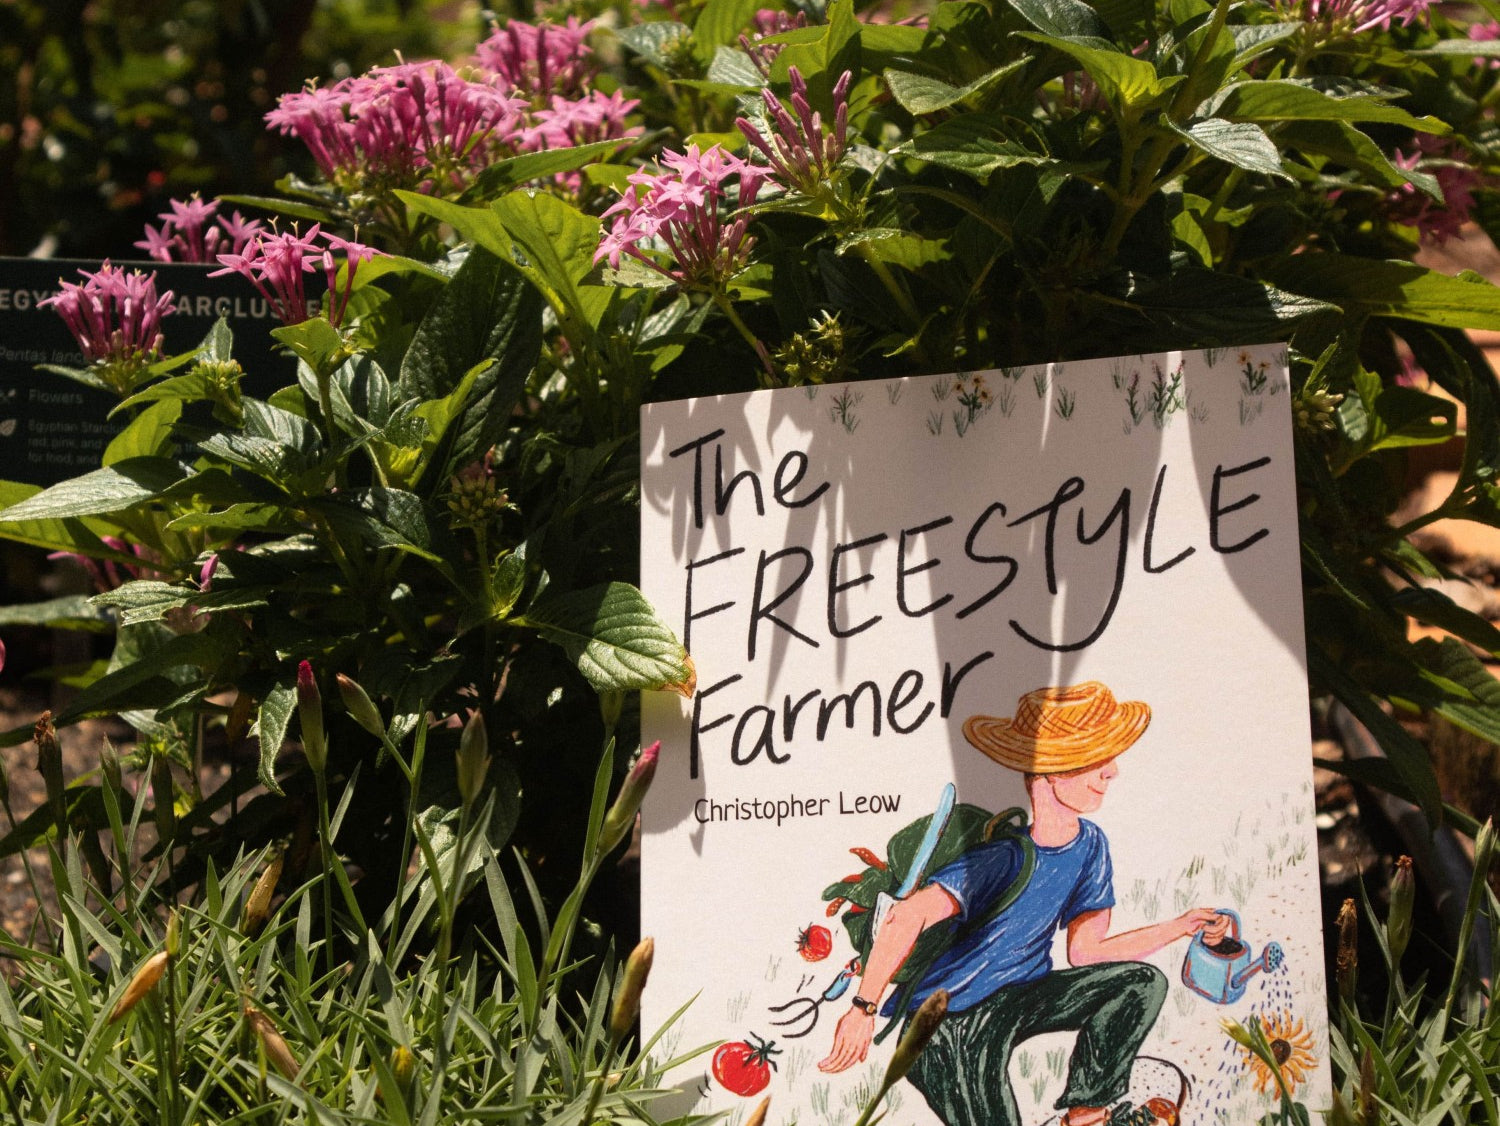 Pass It On Singapore, The Freestyle Farmer by Christopher Leow, Urban Farming Singapore, Farm to Table Singapore